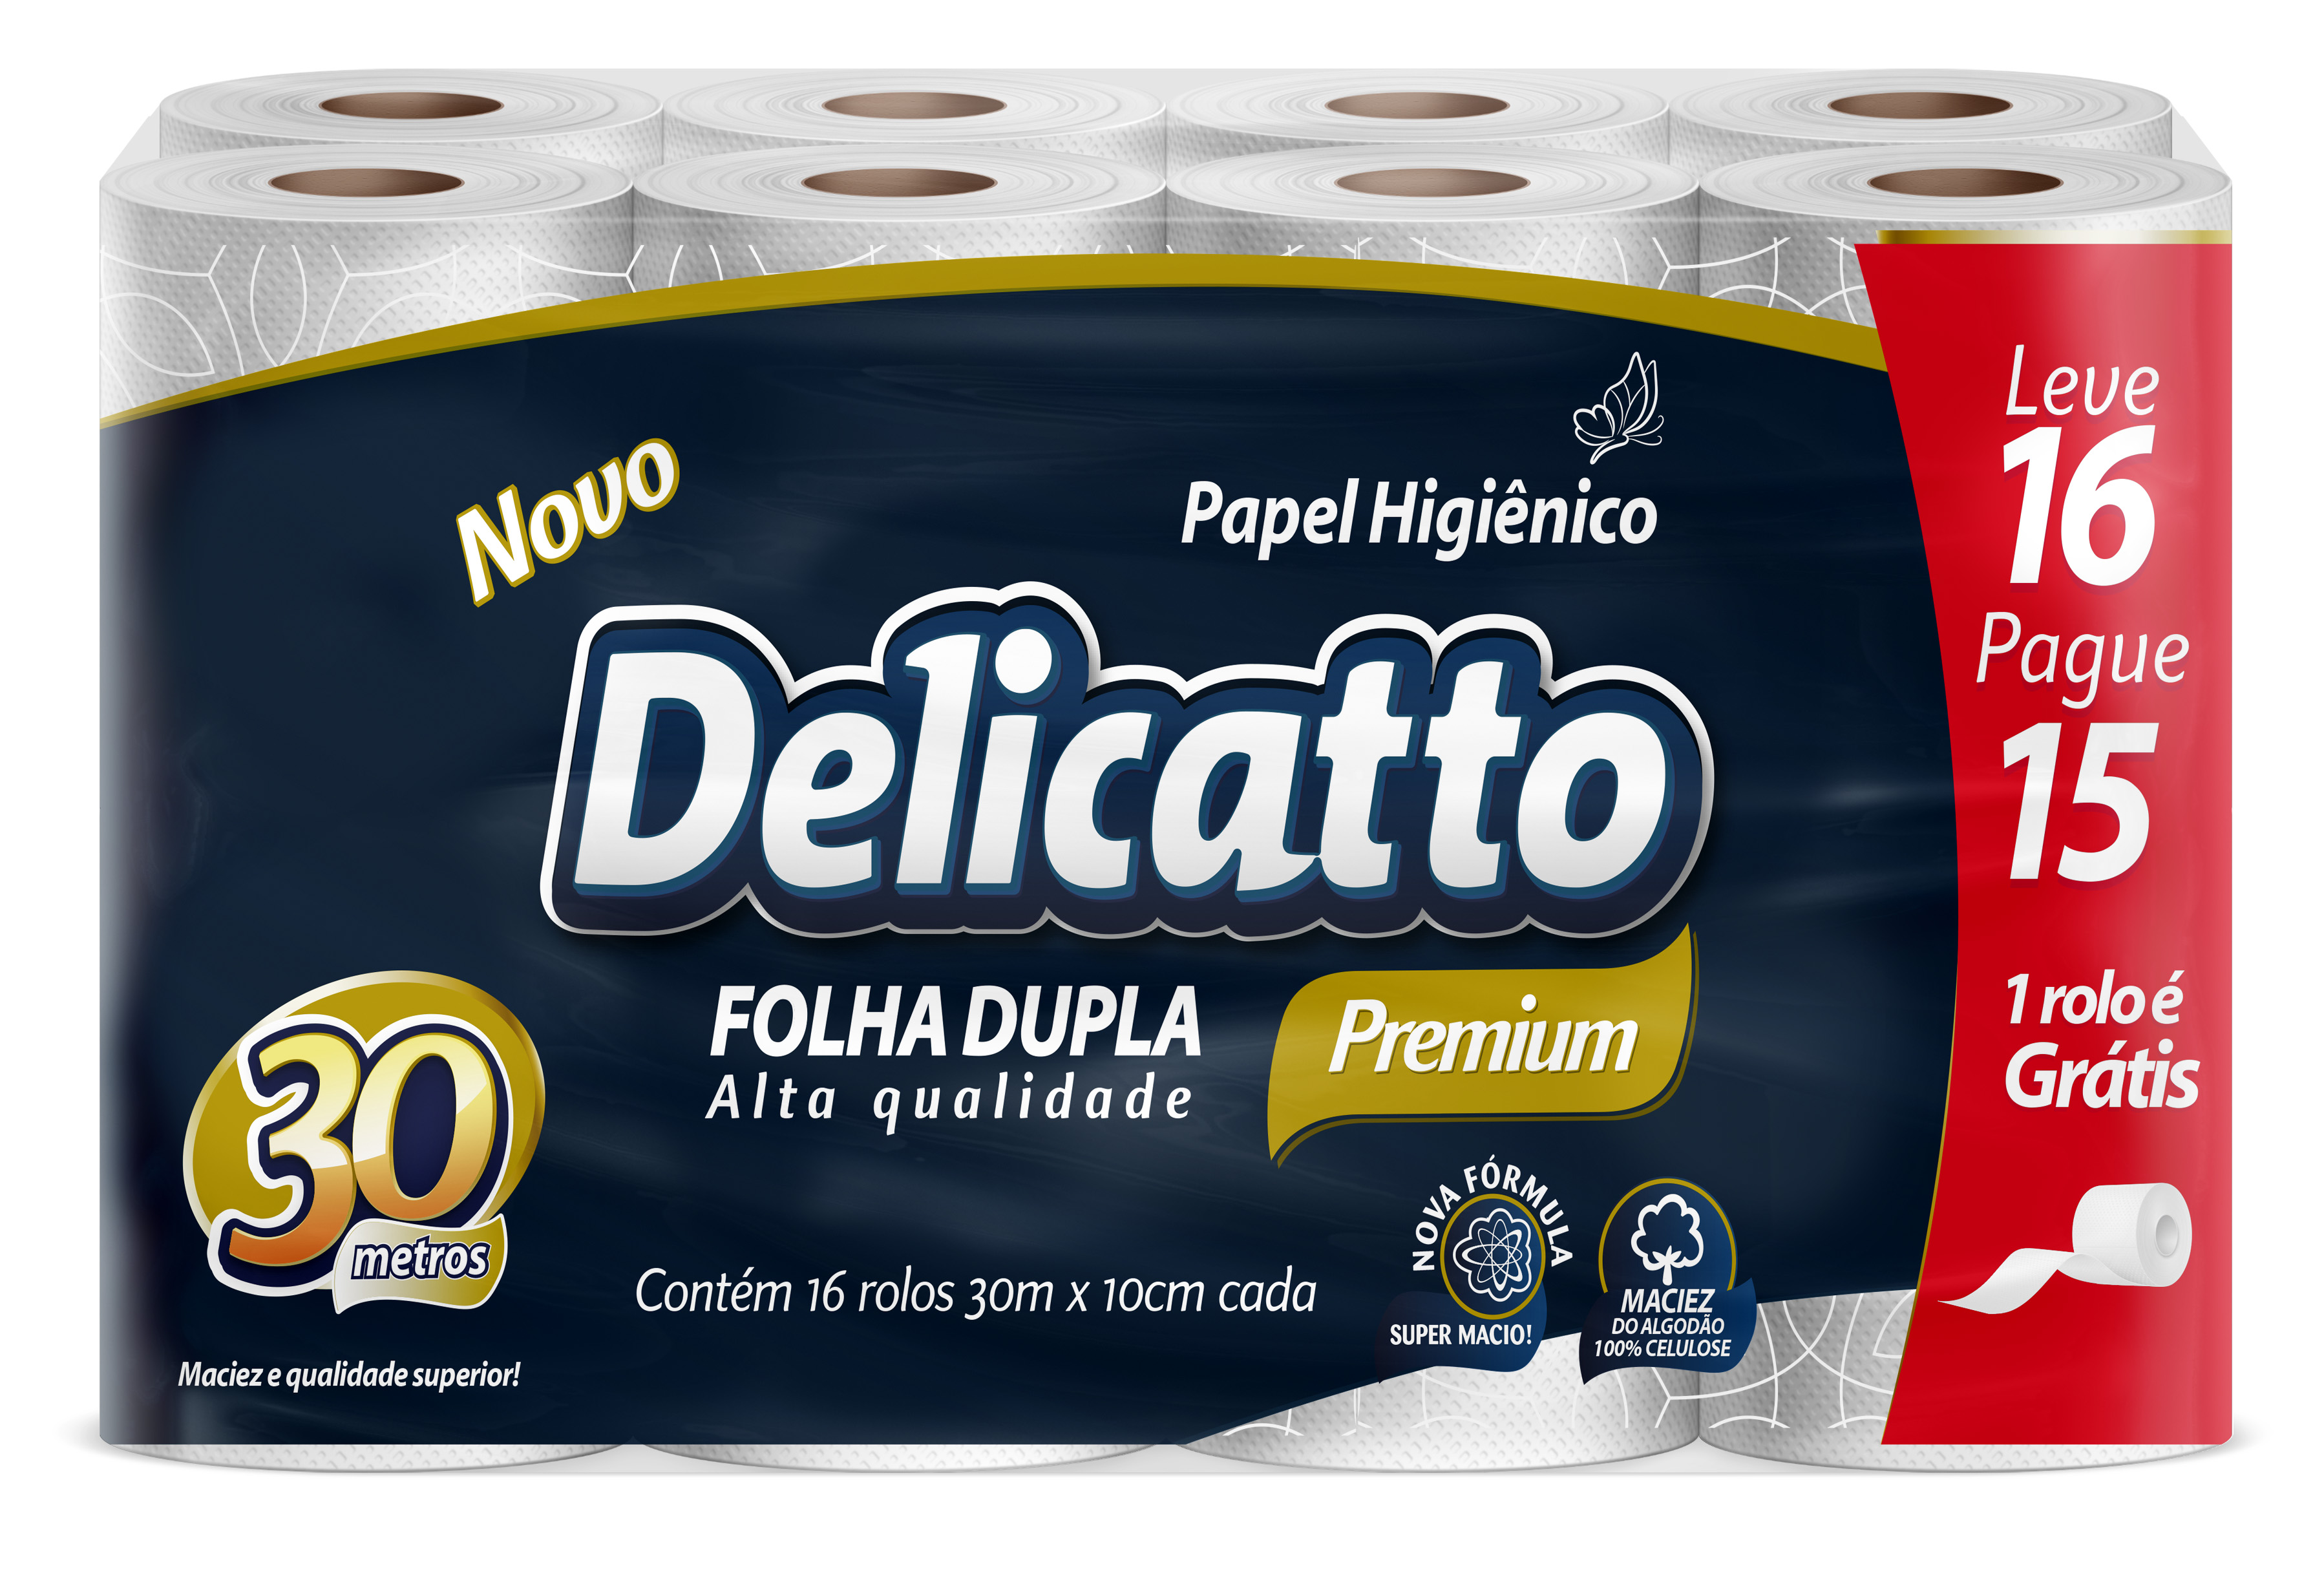 Delicatto Premium 16 Rolos